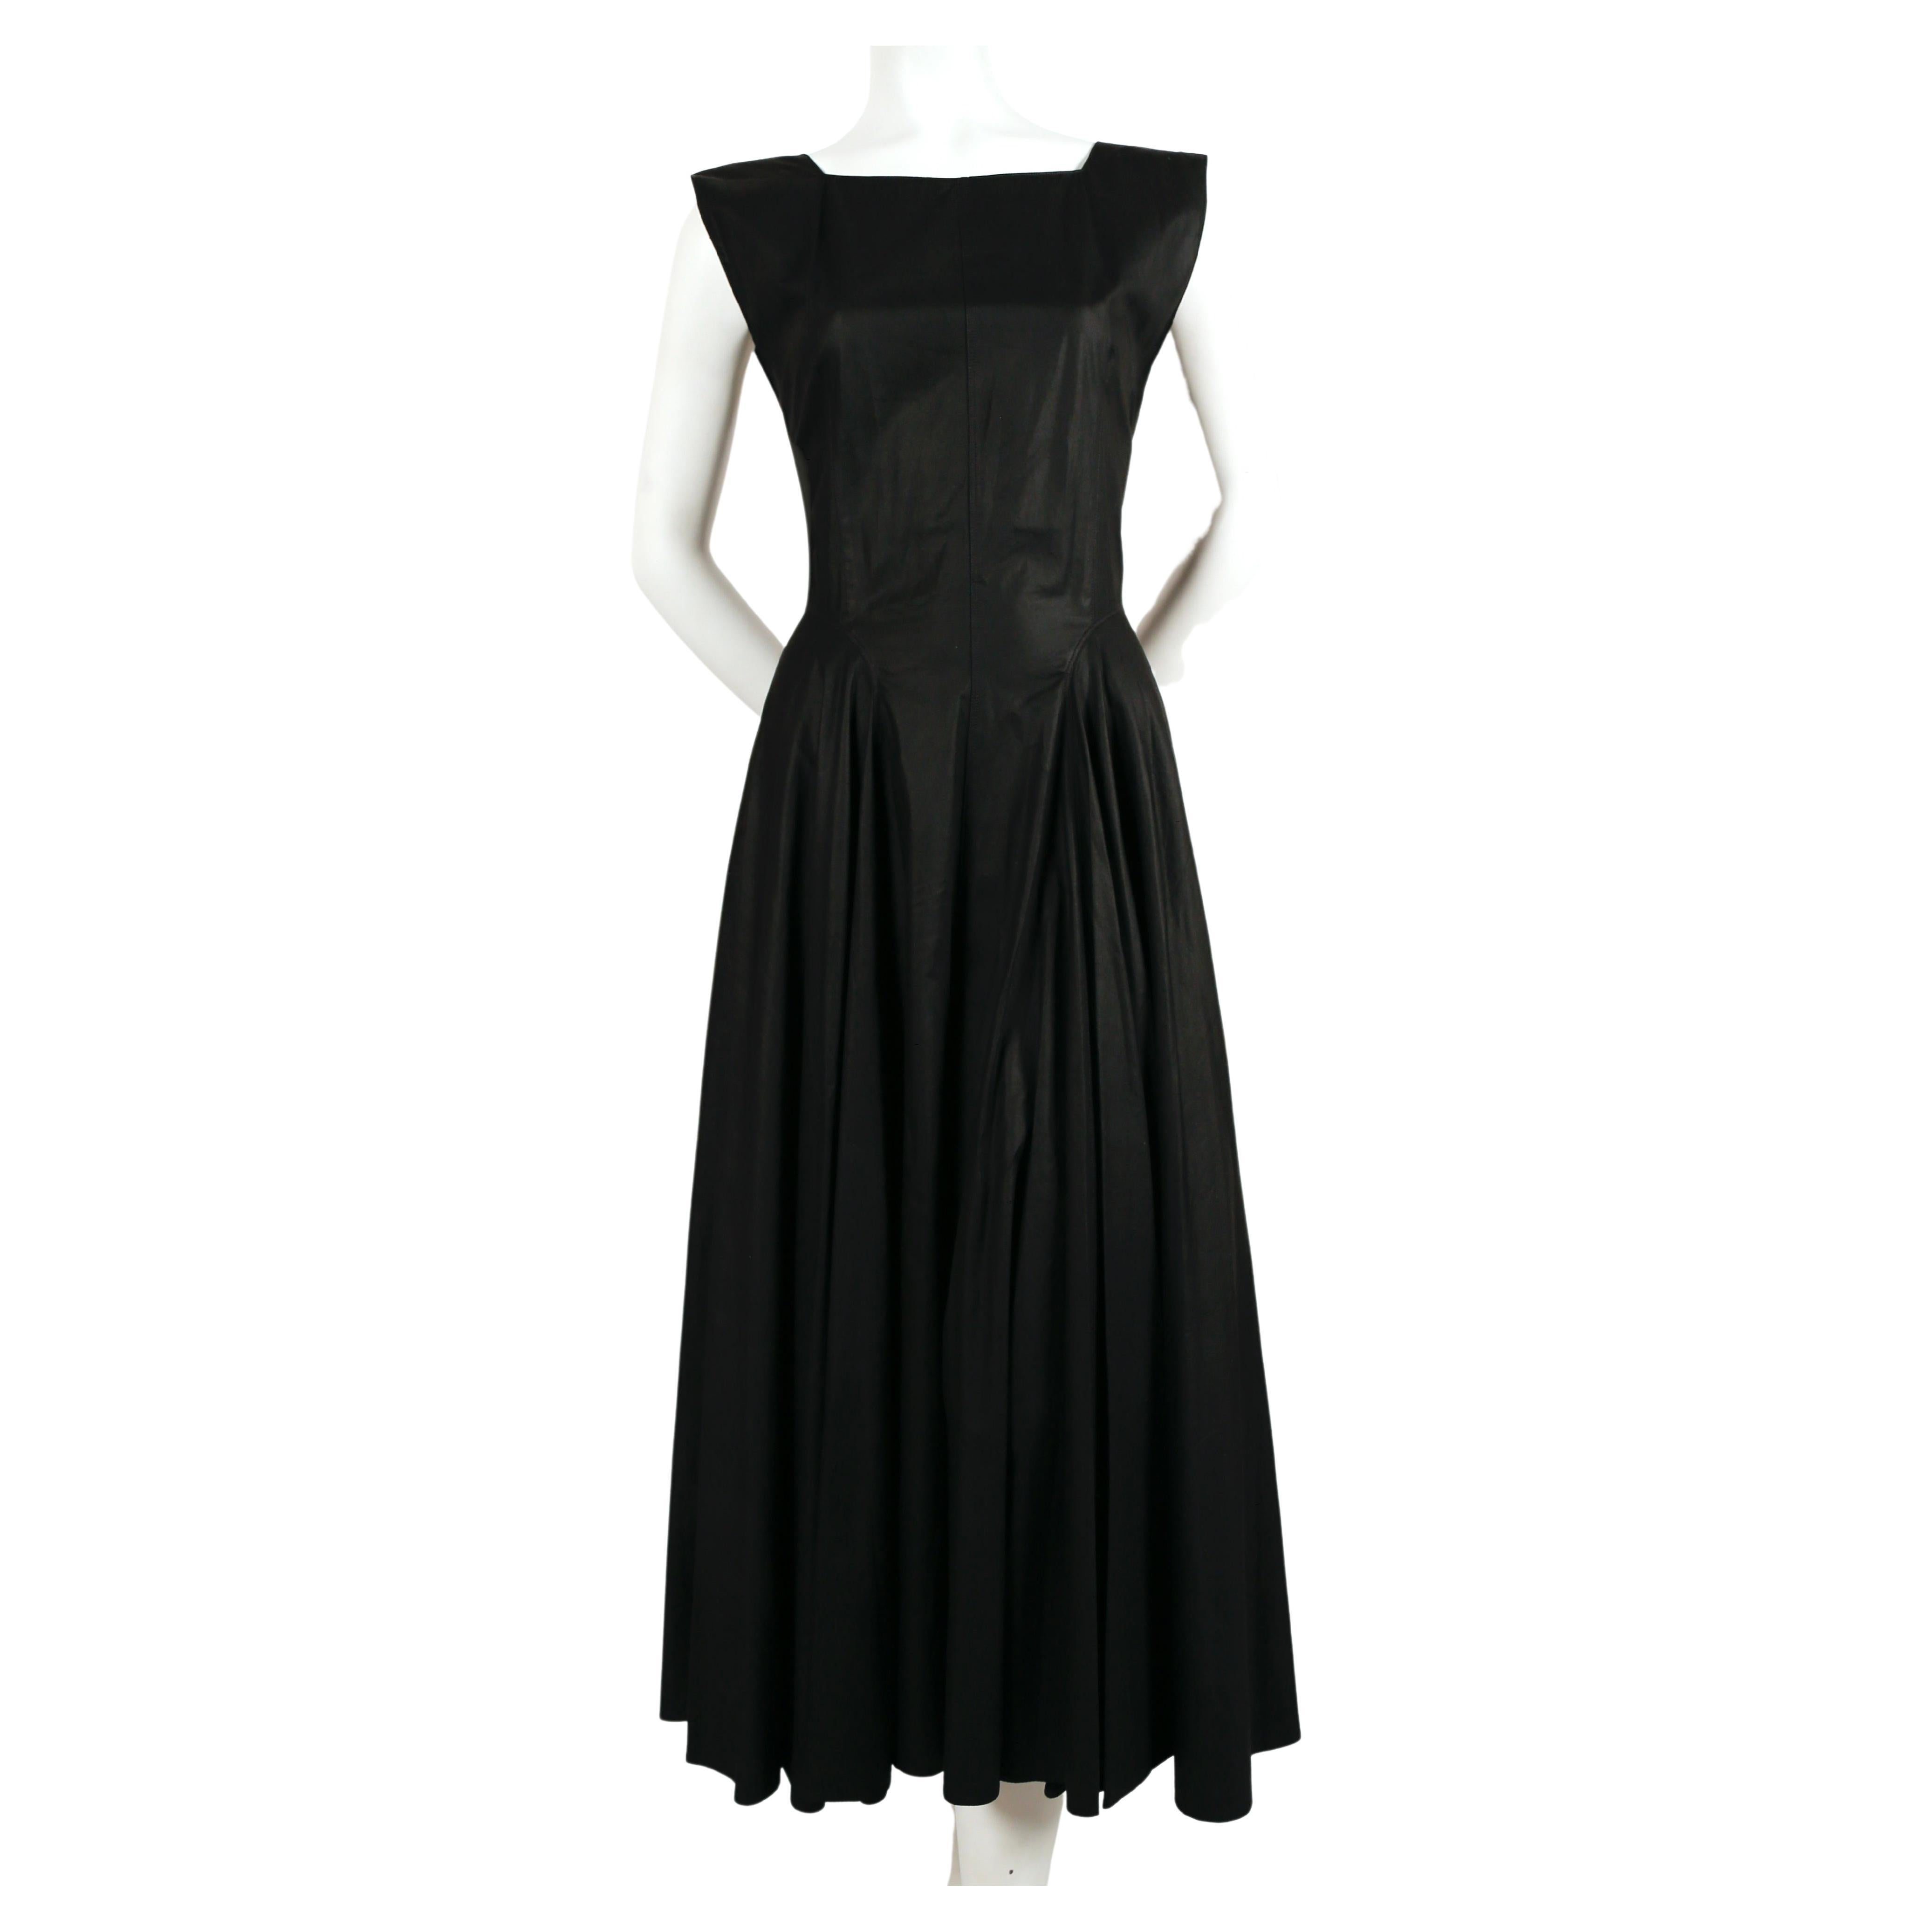 Robe en coton noir aux coutures étonnantes et à la jupe ample, conçue par Azzedine Alaia et datant des années 1980. Labellisée taille 40 mais cette robe est très petite. La robe correspond le mieux à un 36 français des temps modernes. Mesures